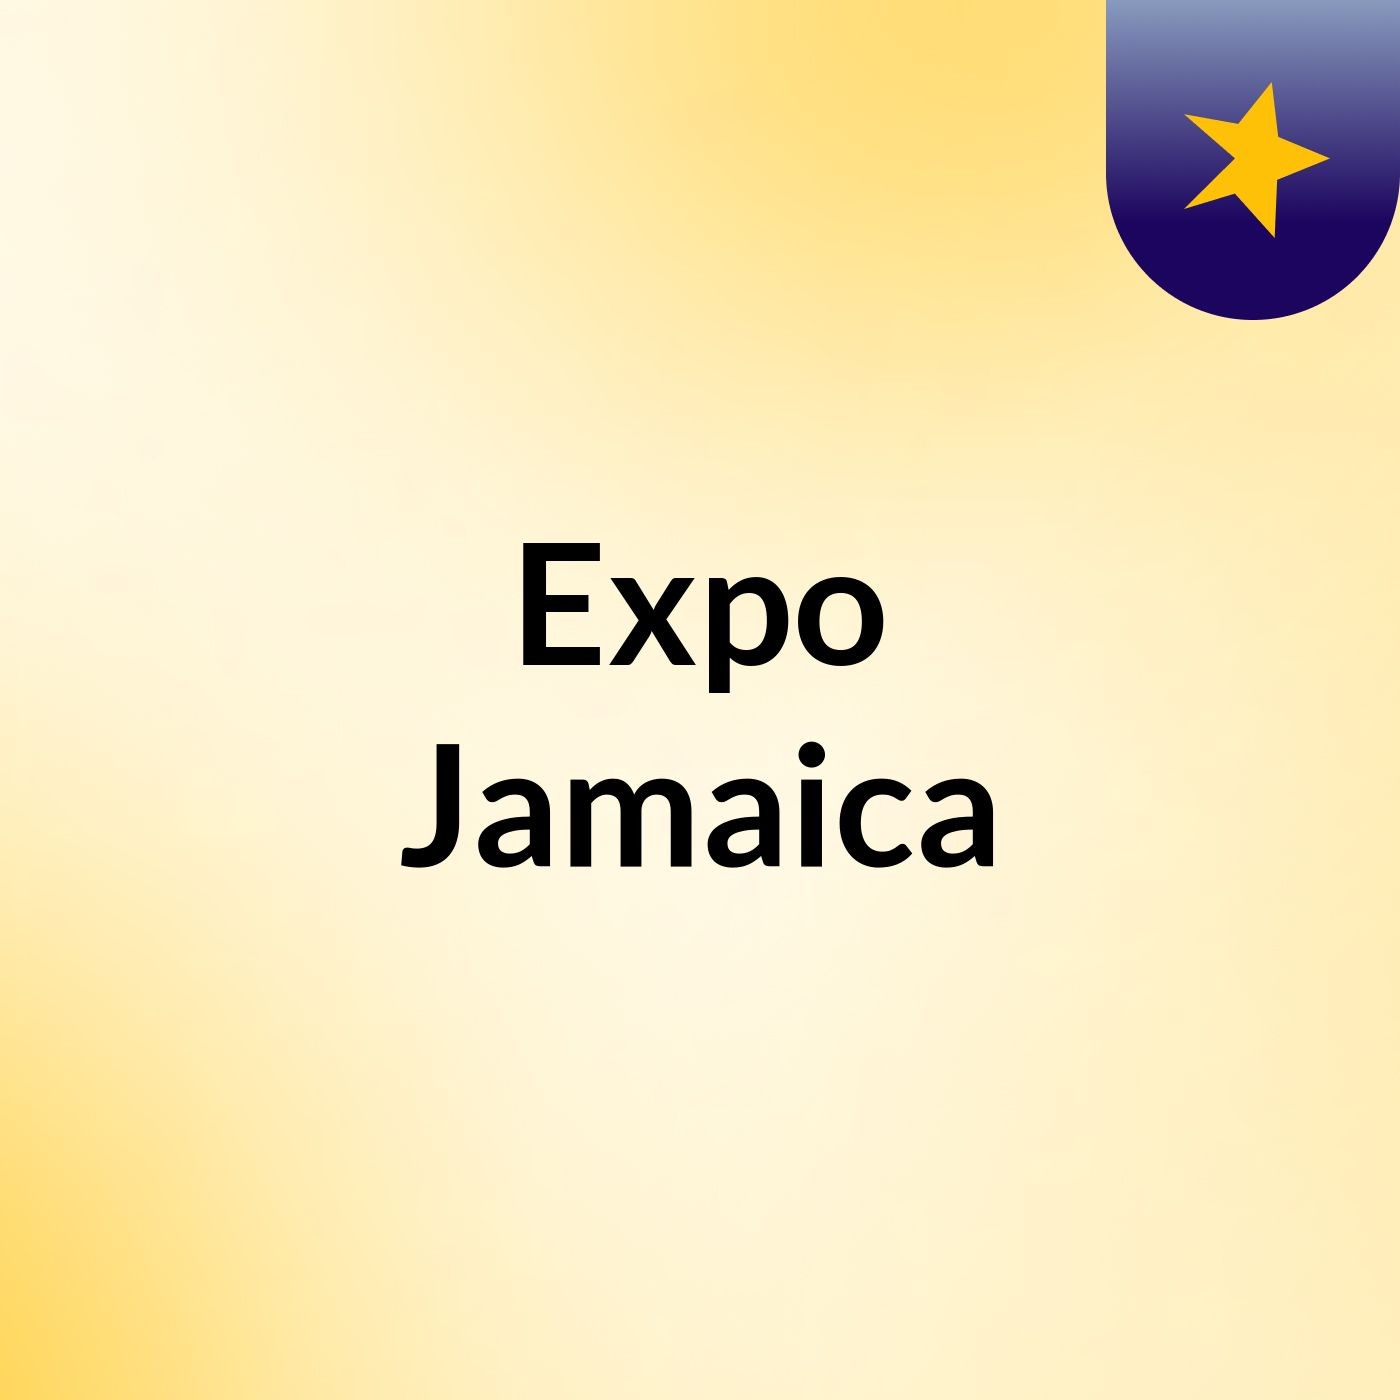 Expo Jamaica